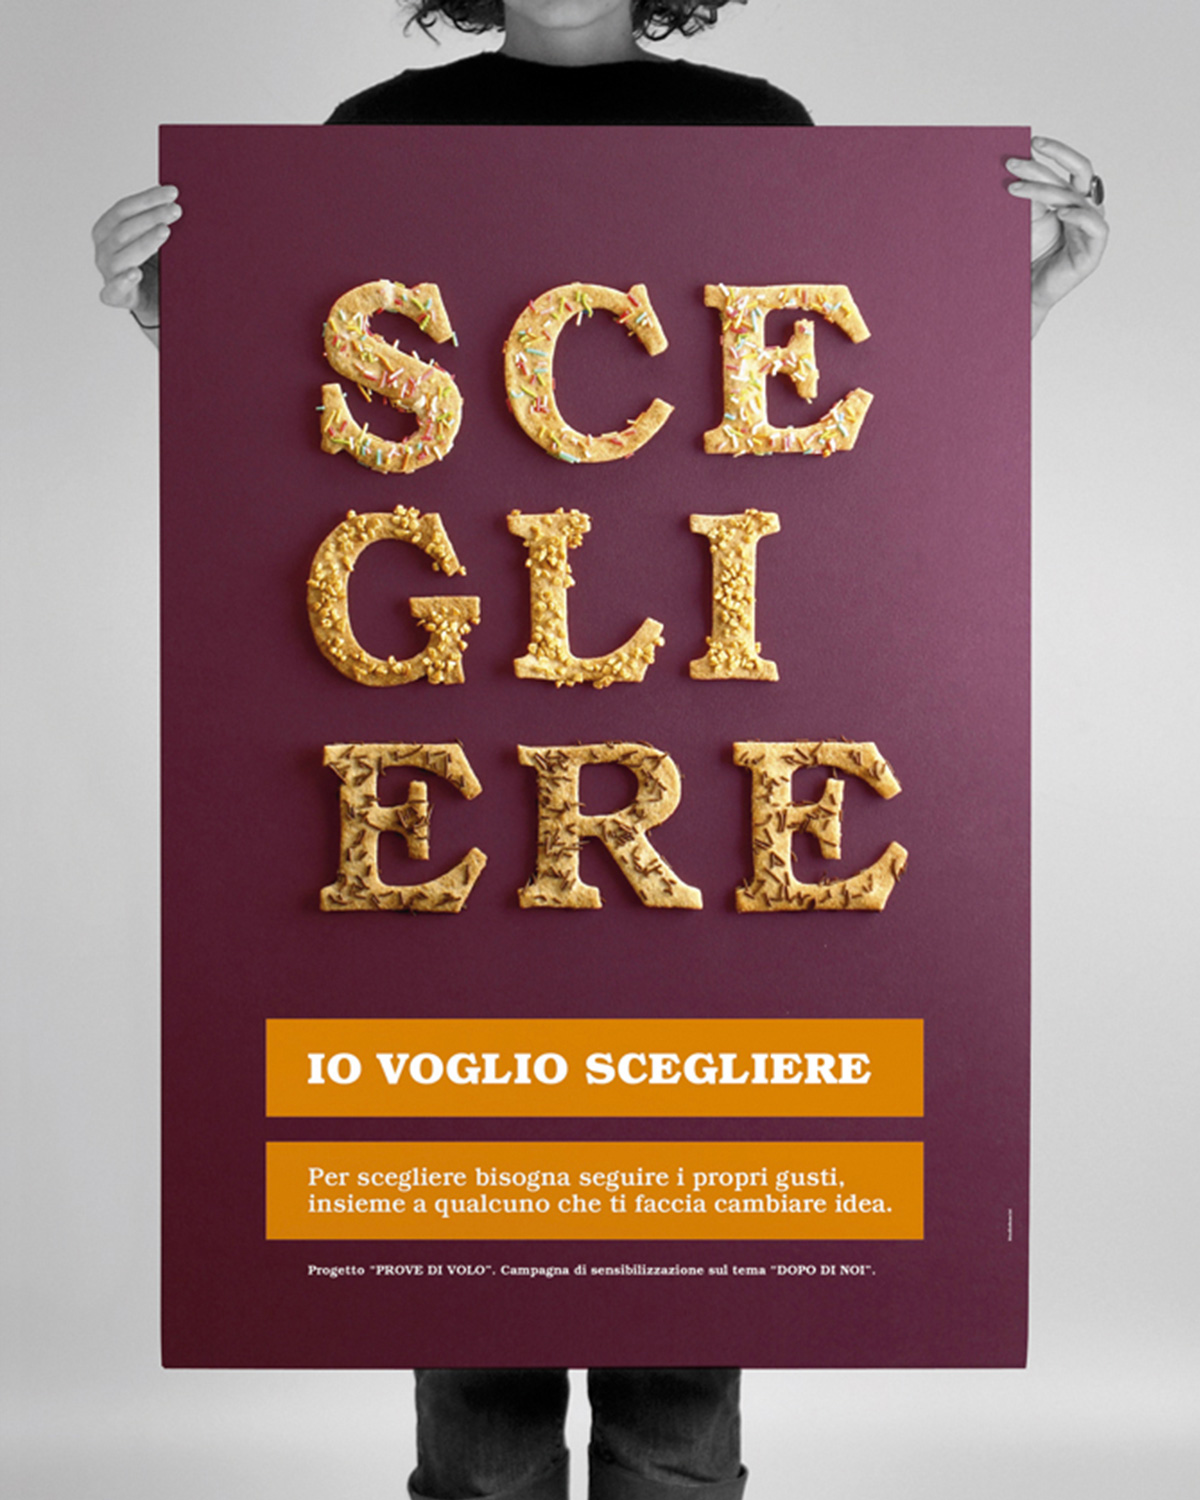 Prove di volo - Social Press Campaign by Nicola Sancisi - Creative Work - $i